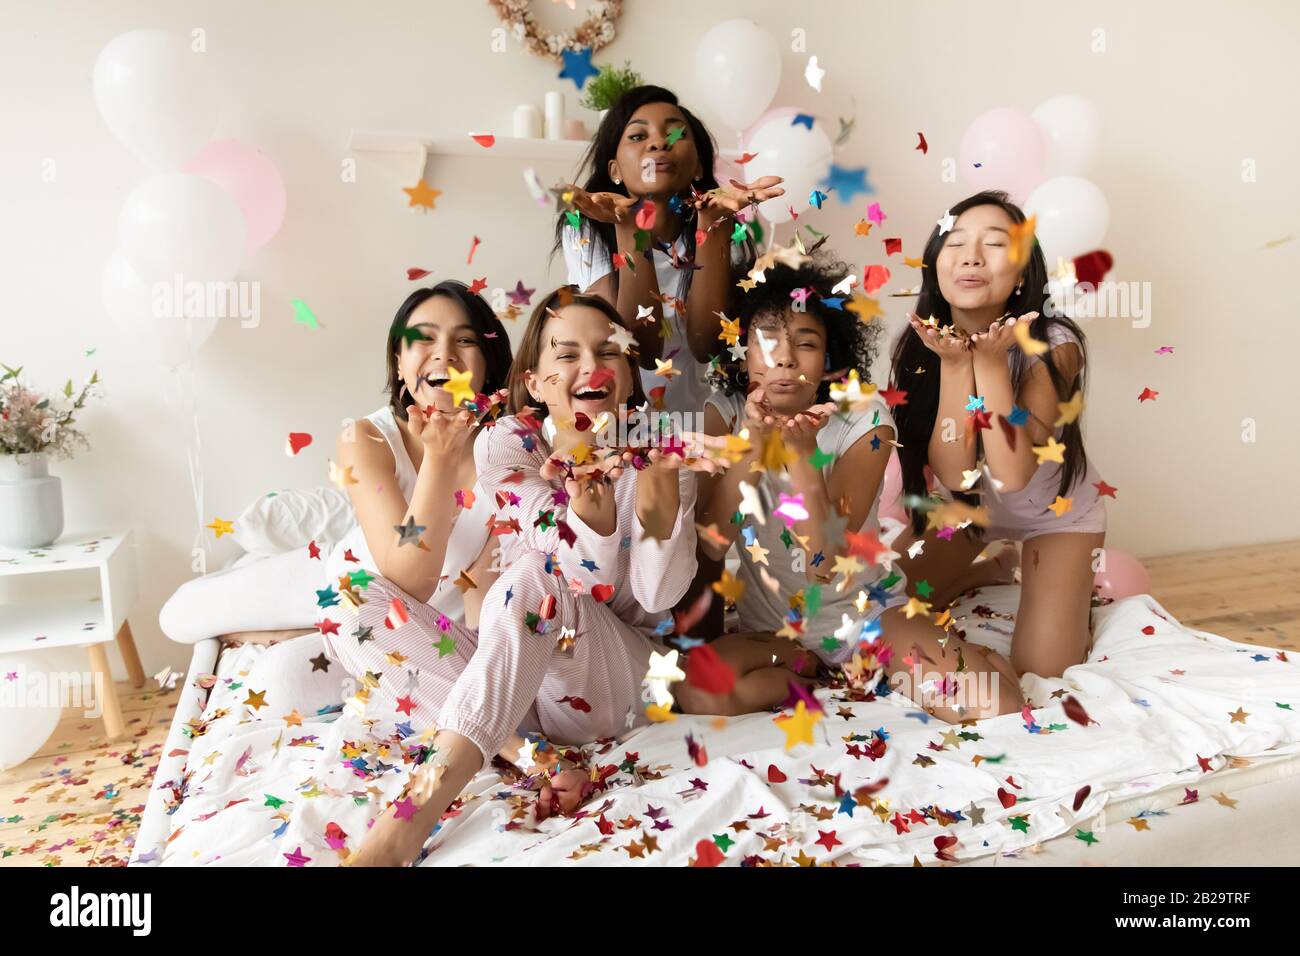 Portrait heureux diverses filles soufflant des confettis à l'appareil photo à la fête Banque D'Images